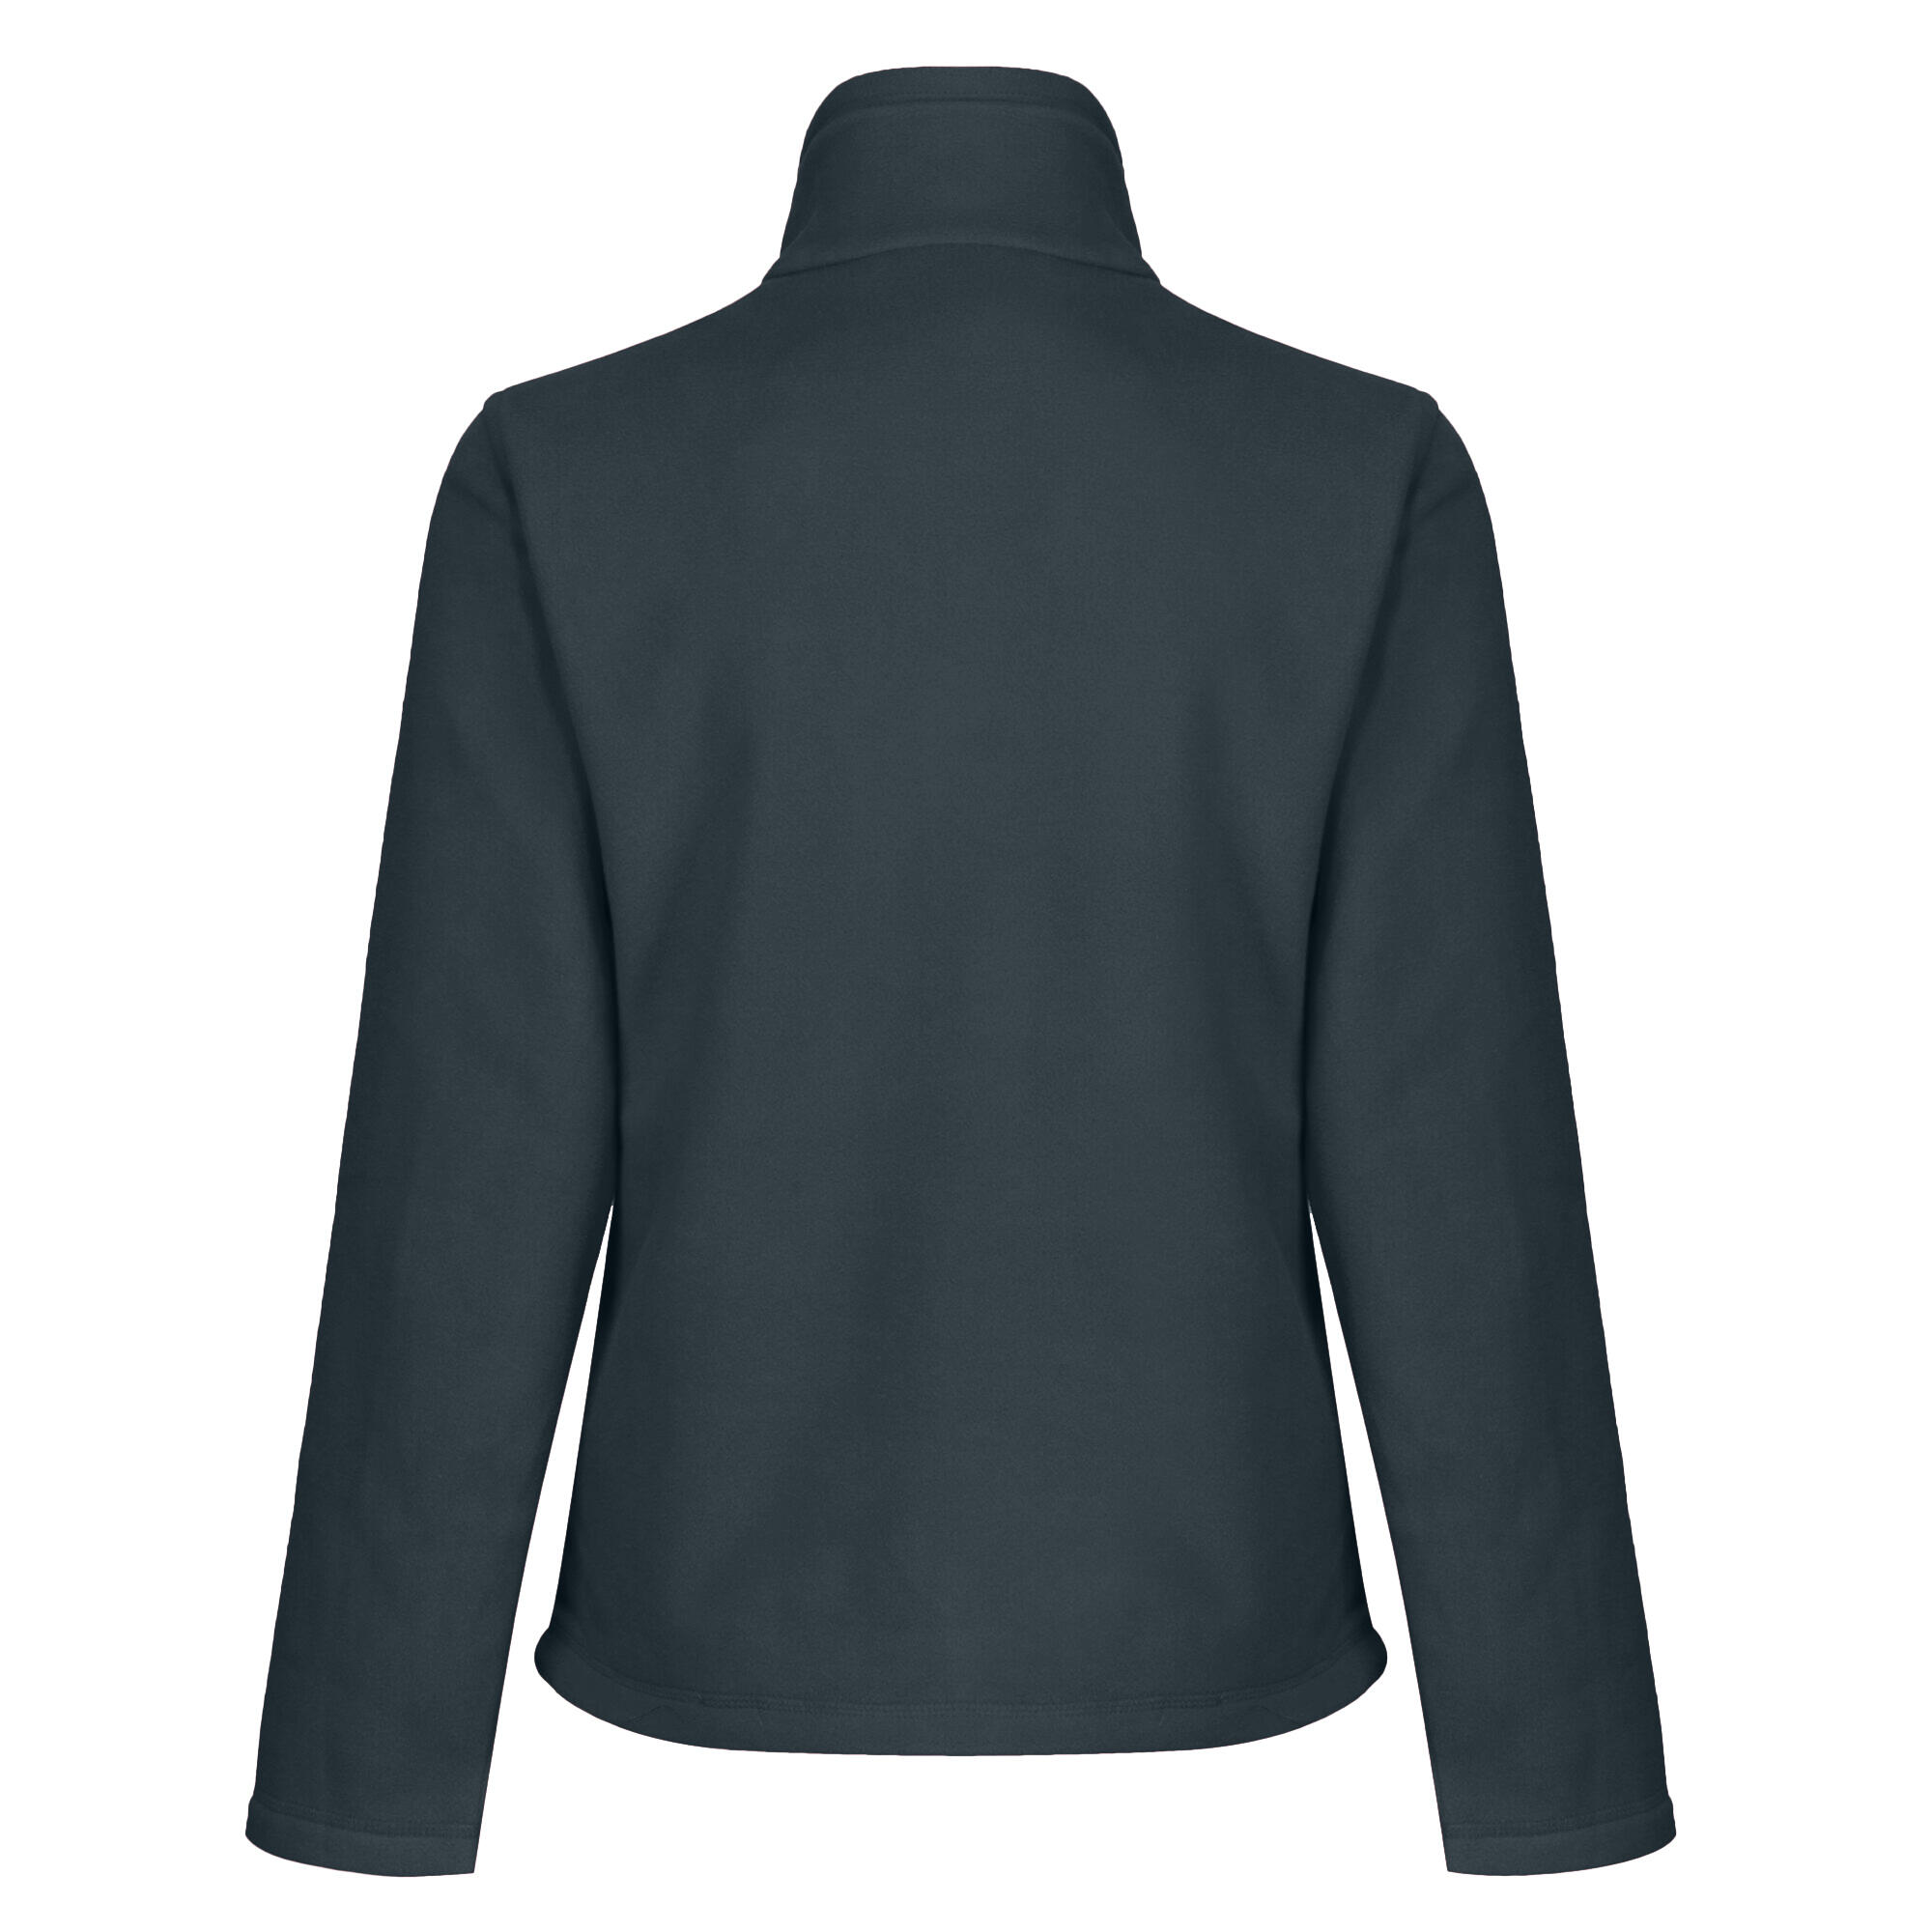 Womens/Ladies FullZip 210 Series Microfleece Jacket (Seal Grey) 2/4